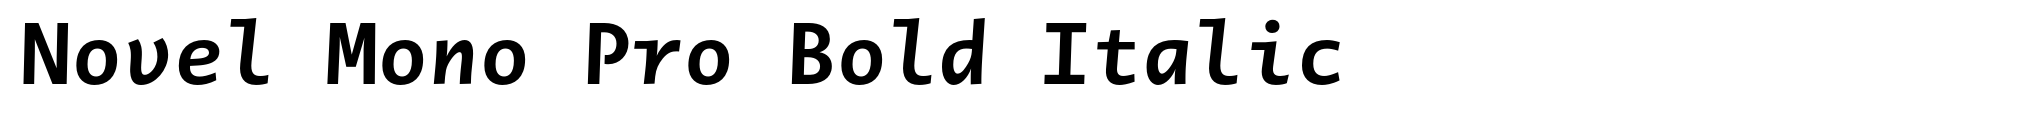 Novel Mono Pro Bold Italic image